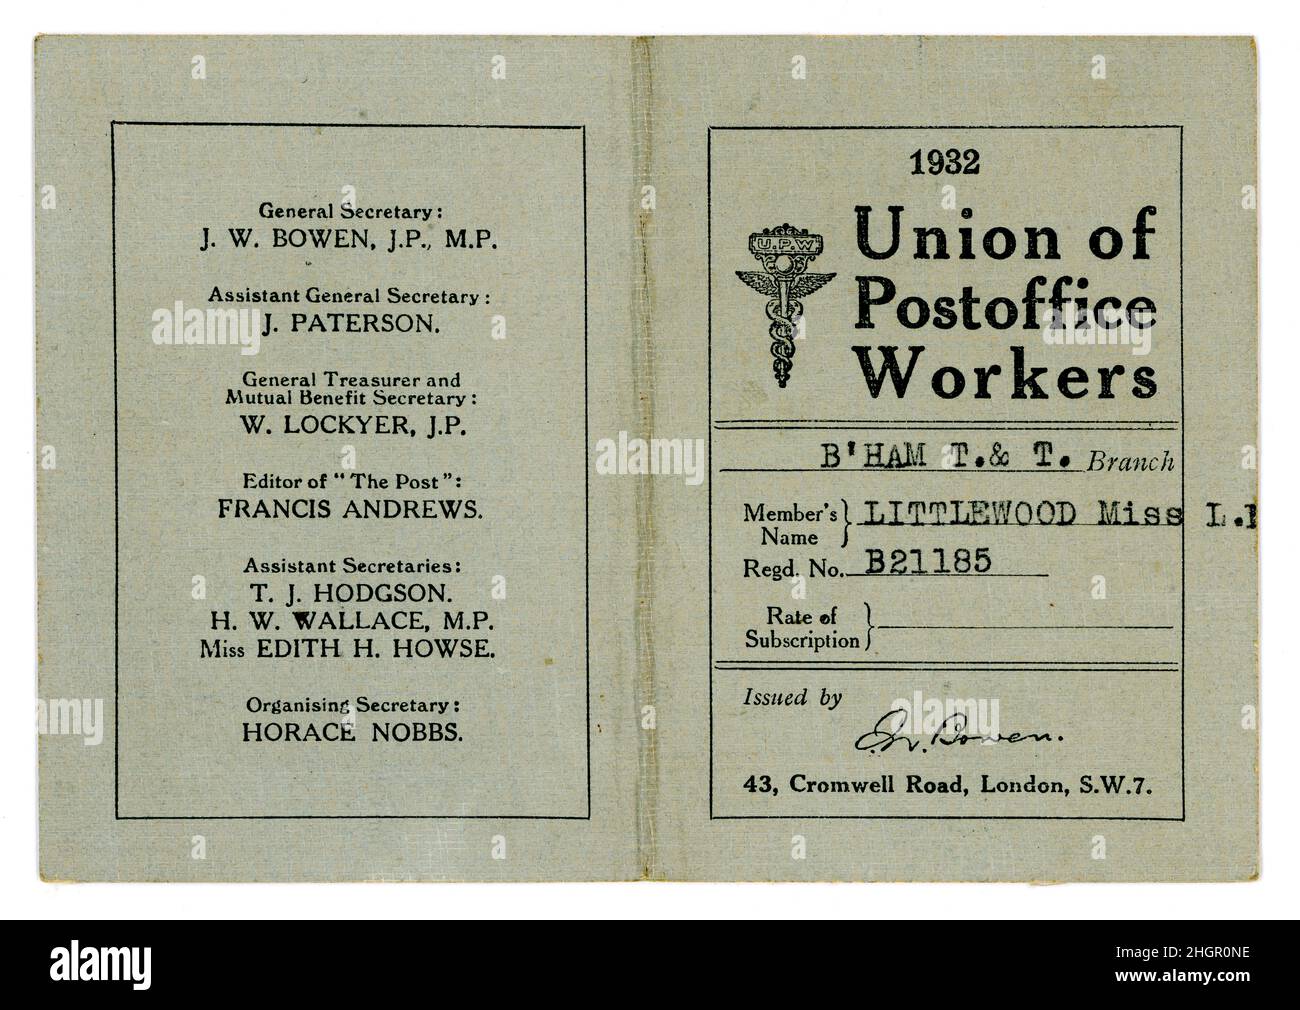 Vorder- und Rückseite der ursprünglichen Union of Postoffice Workers (UPW), möglicherweise eine Mitgliedskarte, mit Quittungen, die für Abonnementzahlungen protokolliert wurden - Niederlassung Birmingham T. & T., datiert 1932, Großbritannien Stockfoto